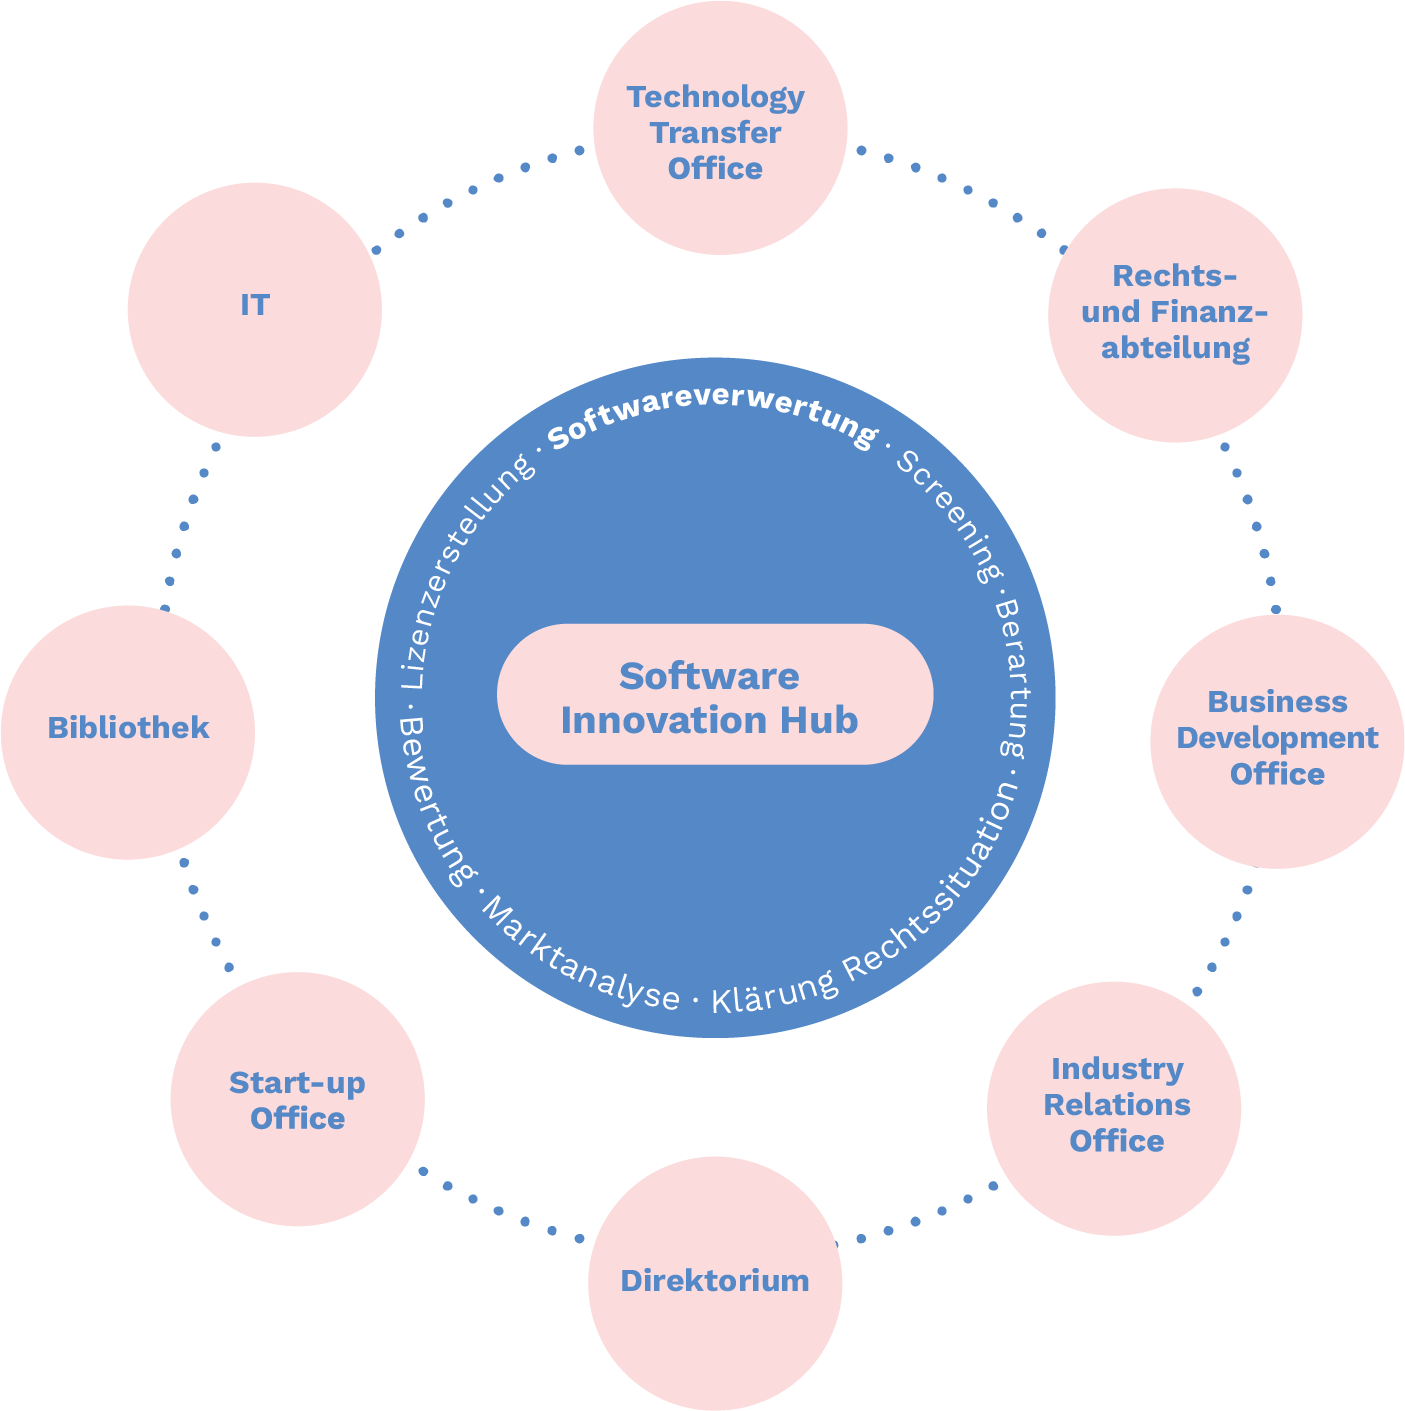 Software Innovation Hub als zentrale Anlaufstelle für Softwareverwertung bei DESY